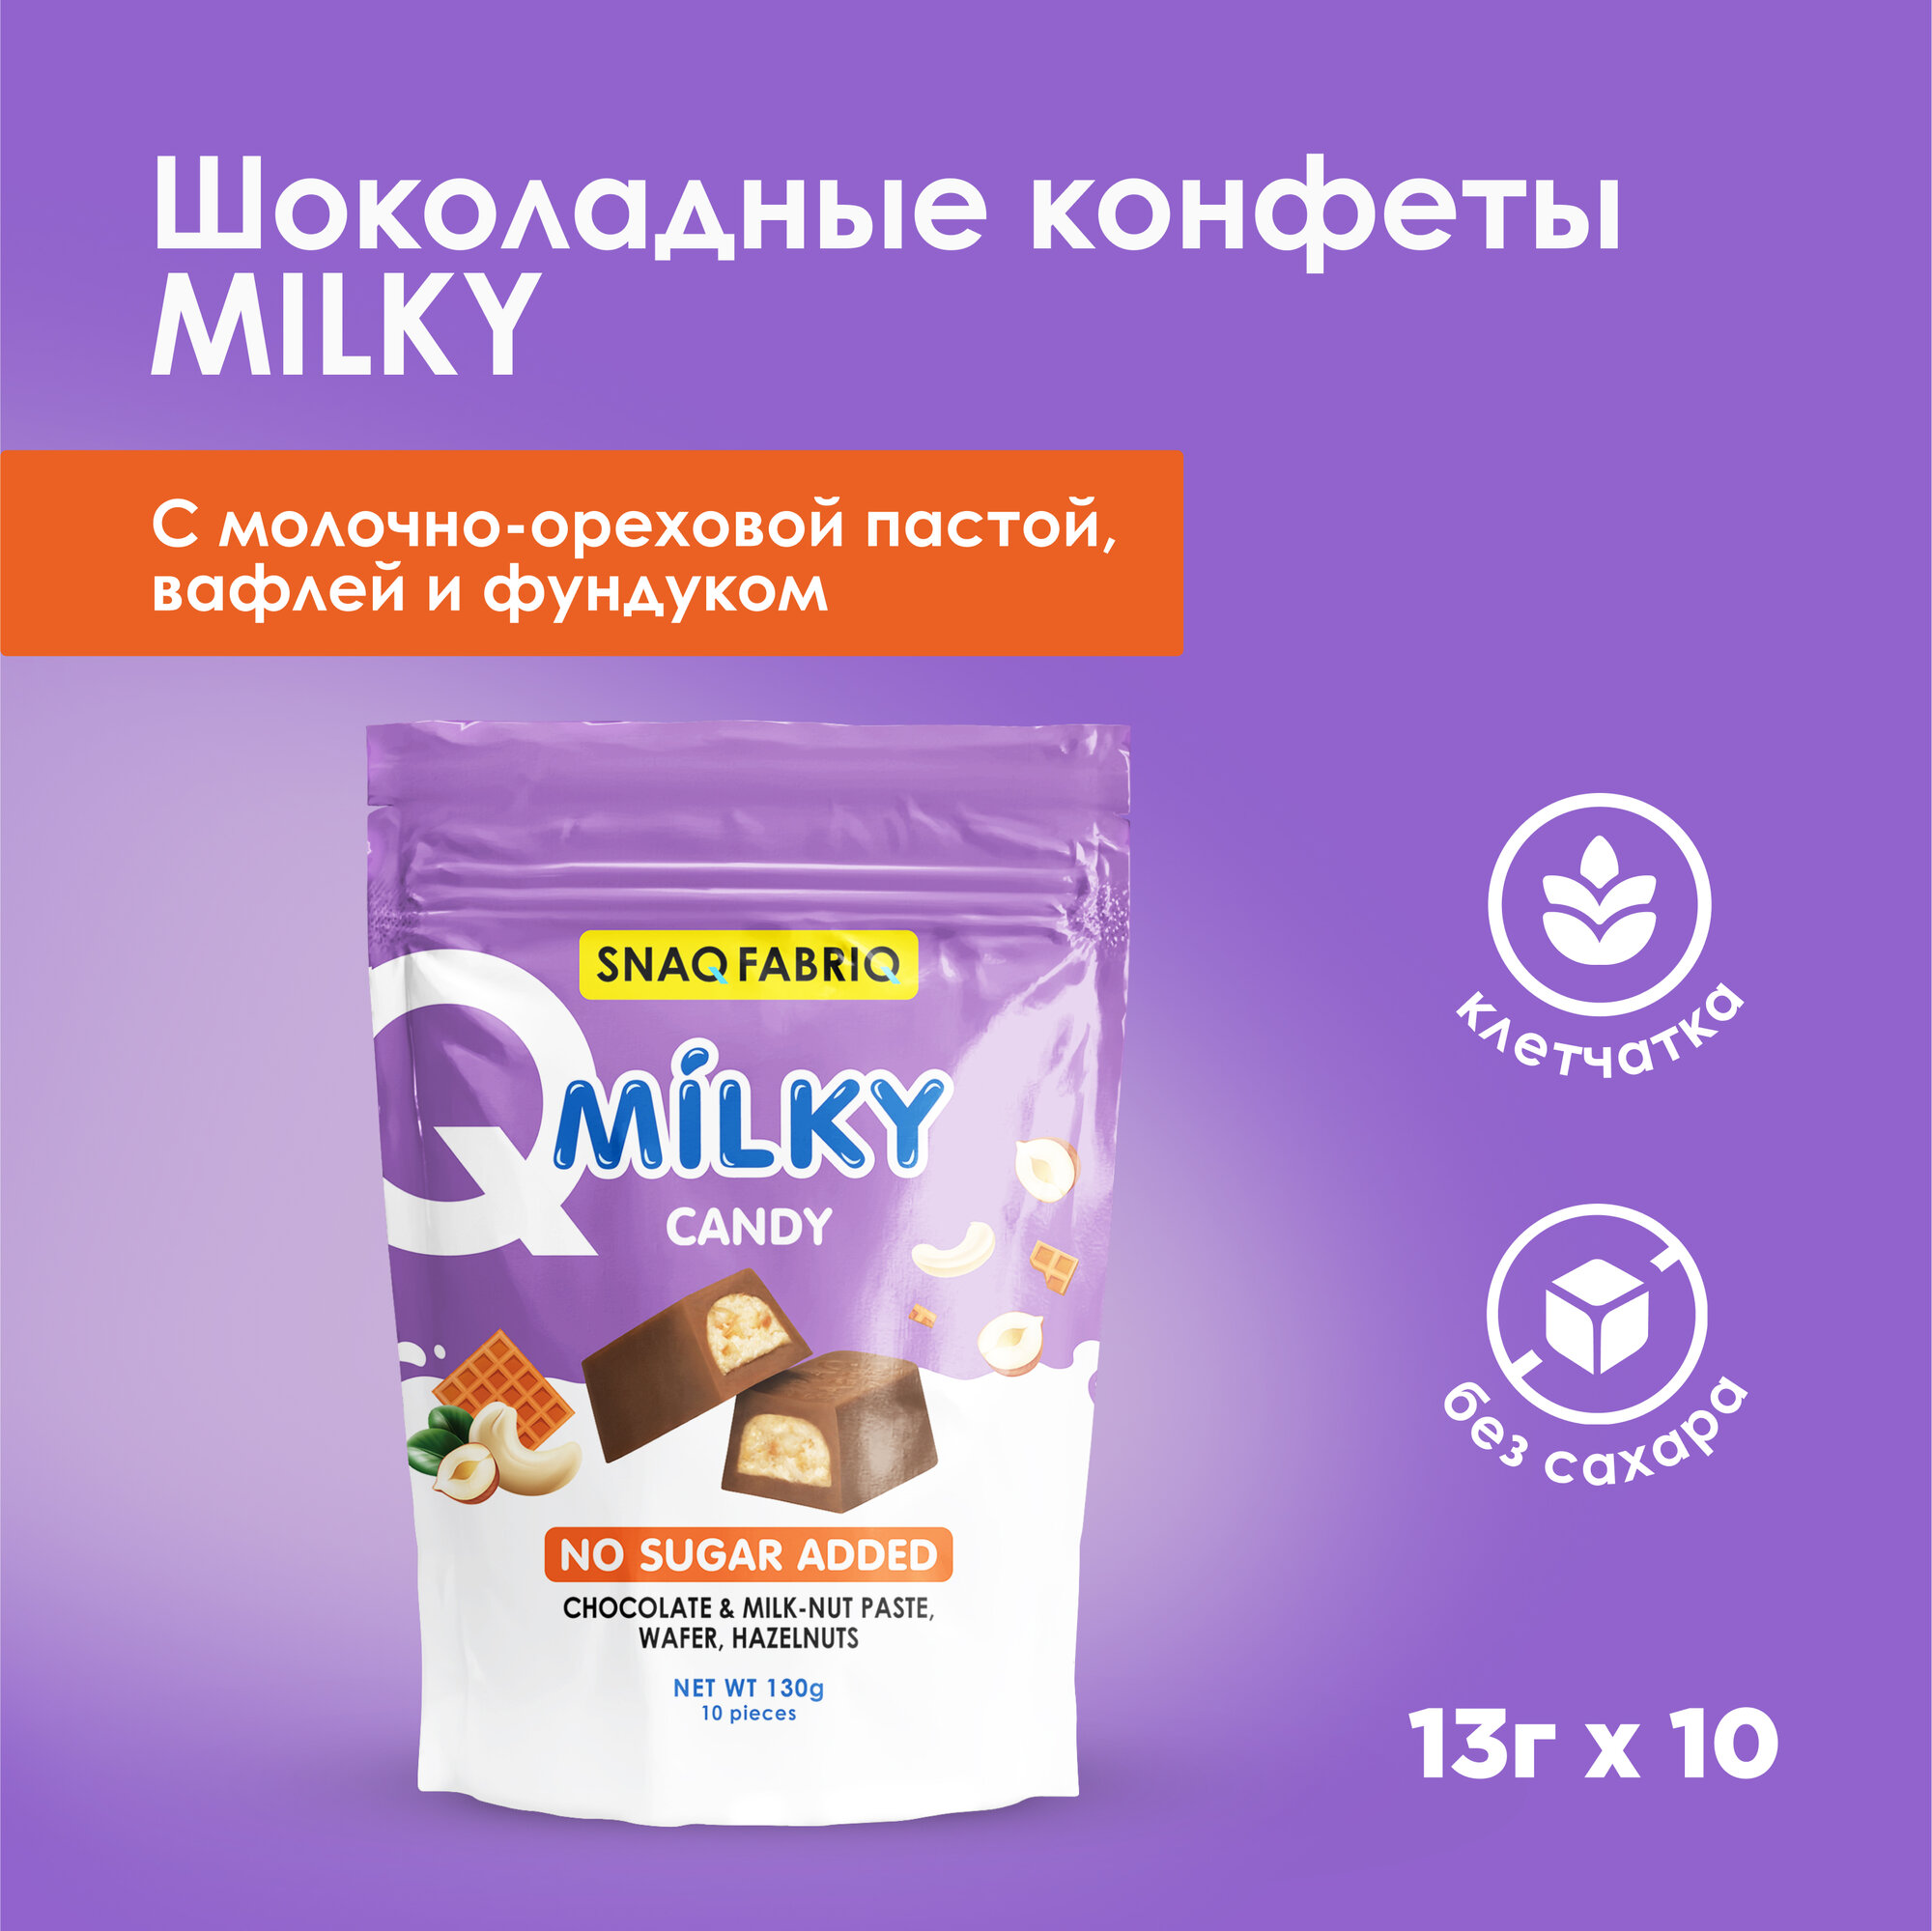 SNAQ FABRIQ Шоколадные конфеты без сахара MILKY CANDY с молочно-ореховой пастой, вафлей и фундуком, 130г (10шт х 13г)